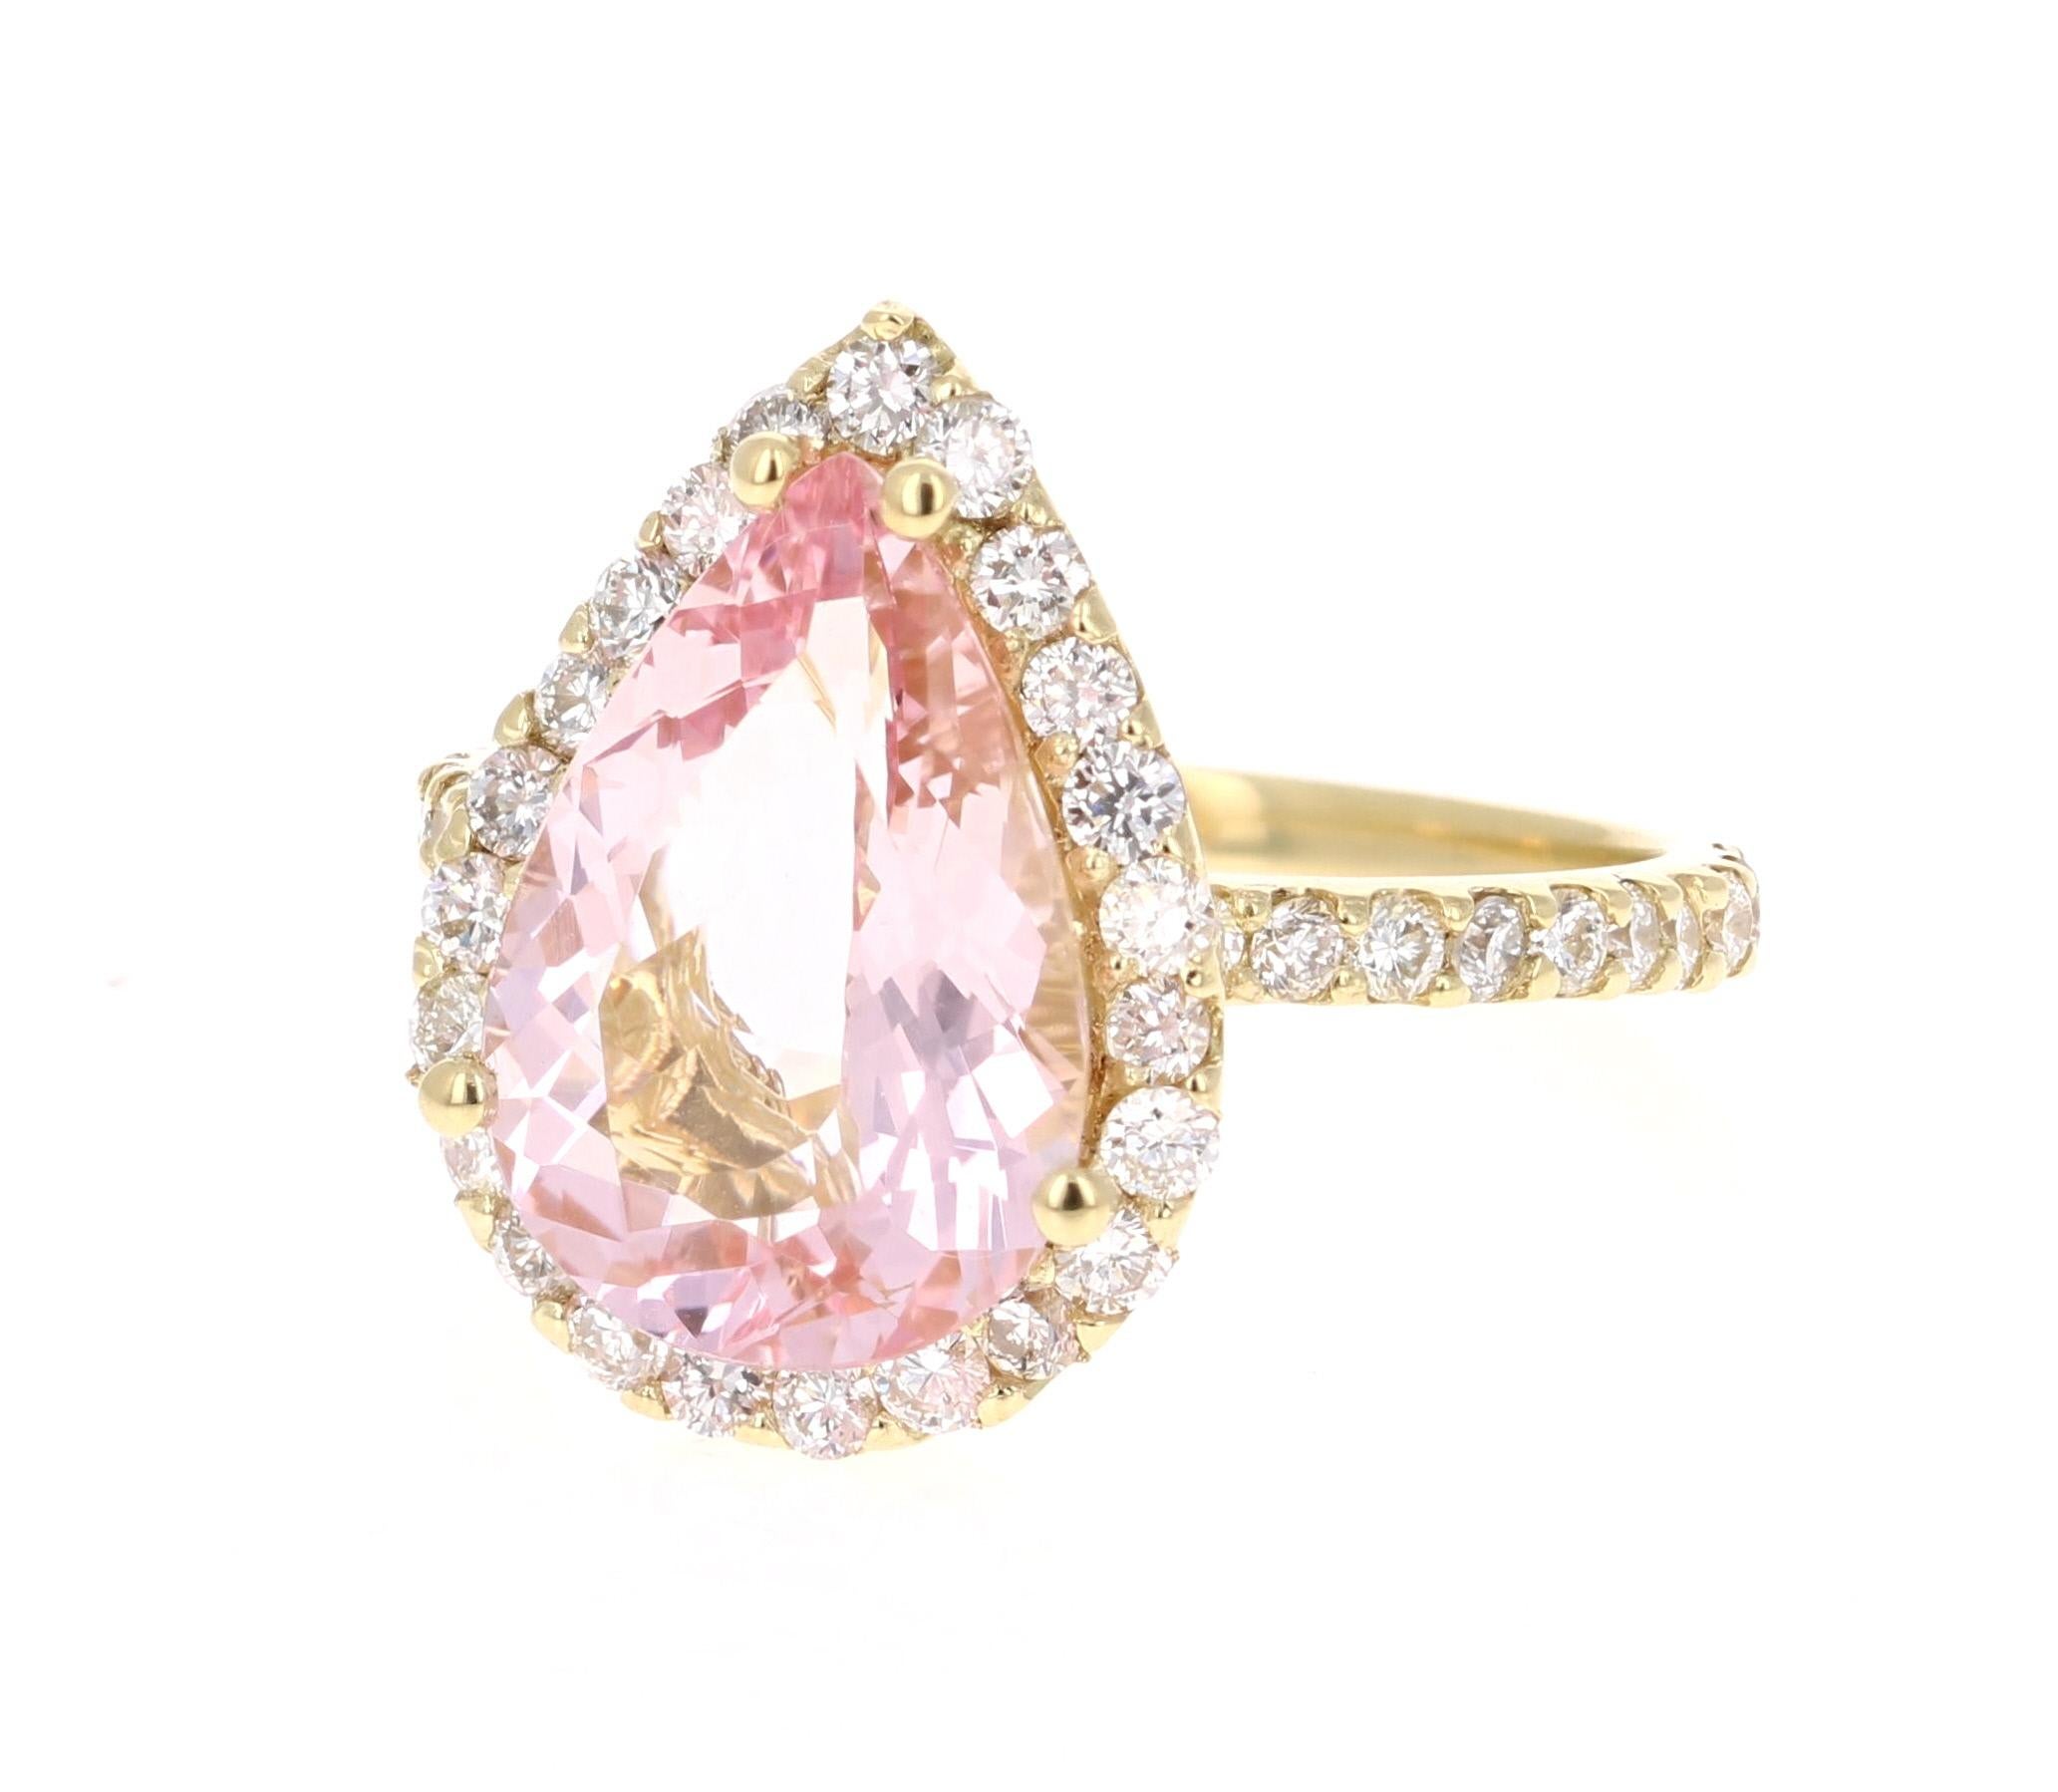 Modern 4.12 Carat Pear Cut Pink Morganite Diamond 18 Karat Yellow Gold Engagement Ring